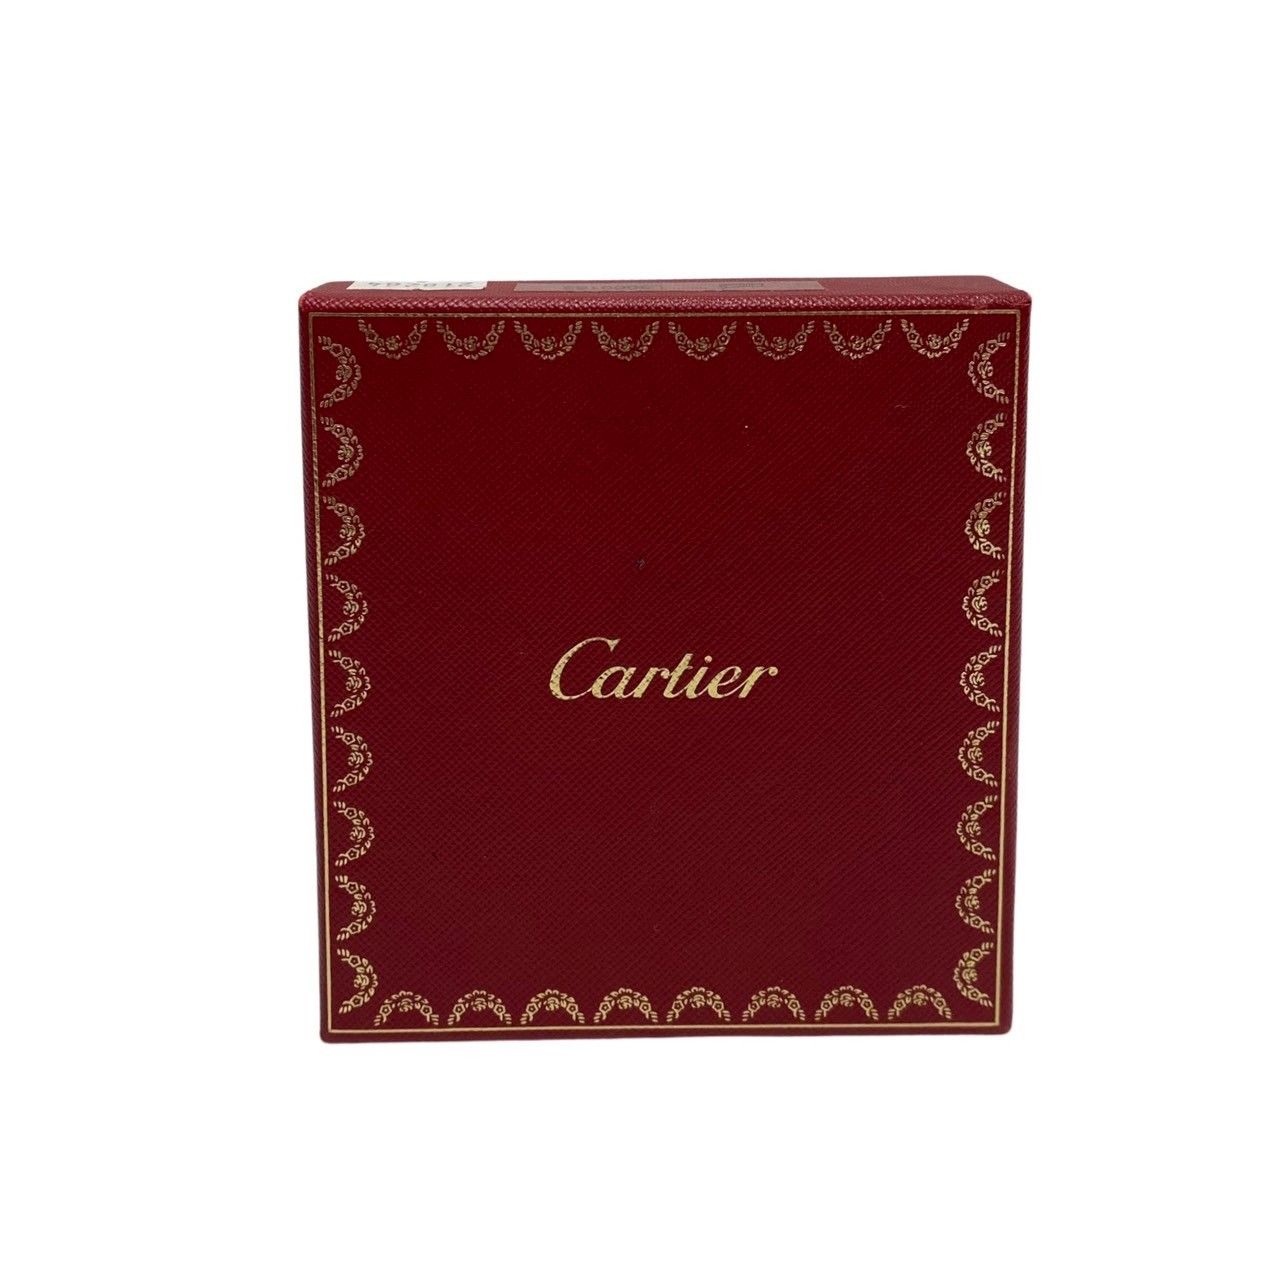 未使用保管品 保存袋 カード付 CARTIER カルティエ マストライン ロゴ レザー がま口 二つ折り 財布 ミニ ウォレット ワインレッド 25818